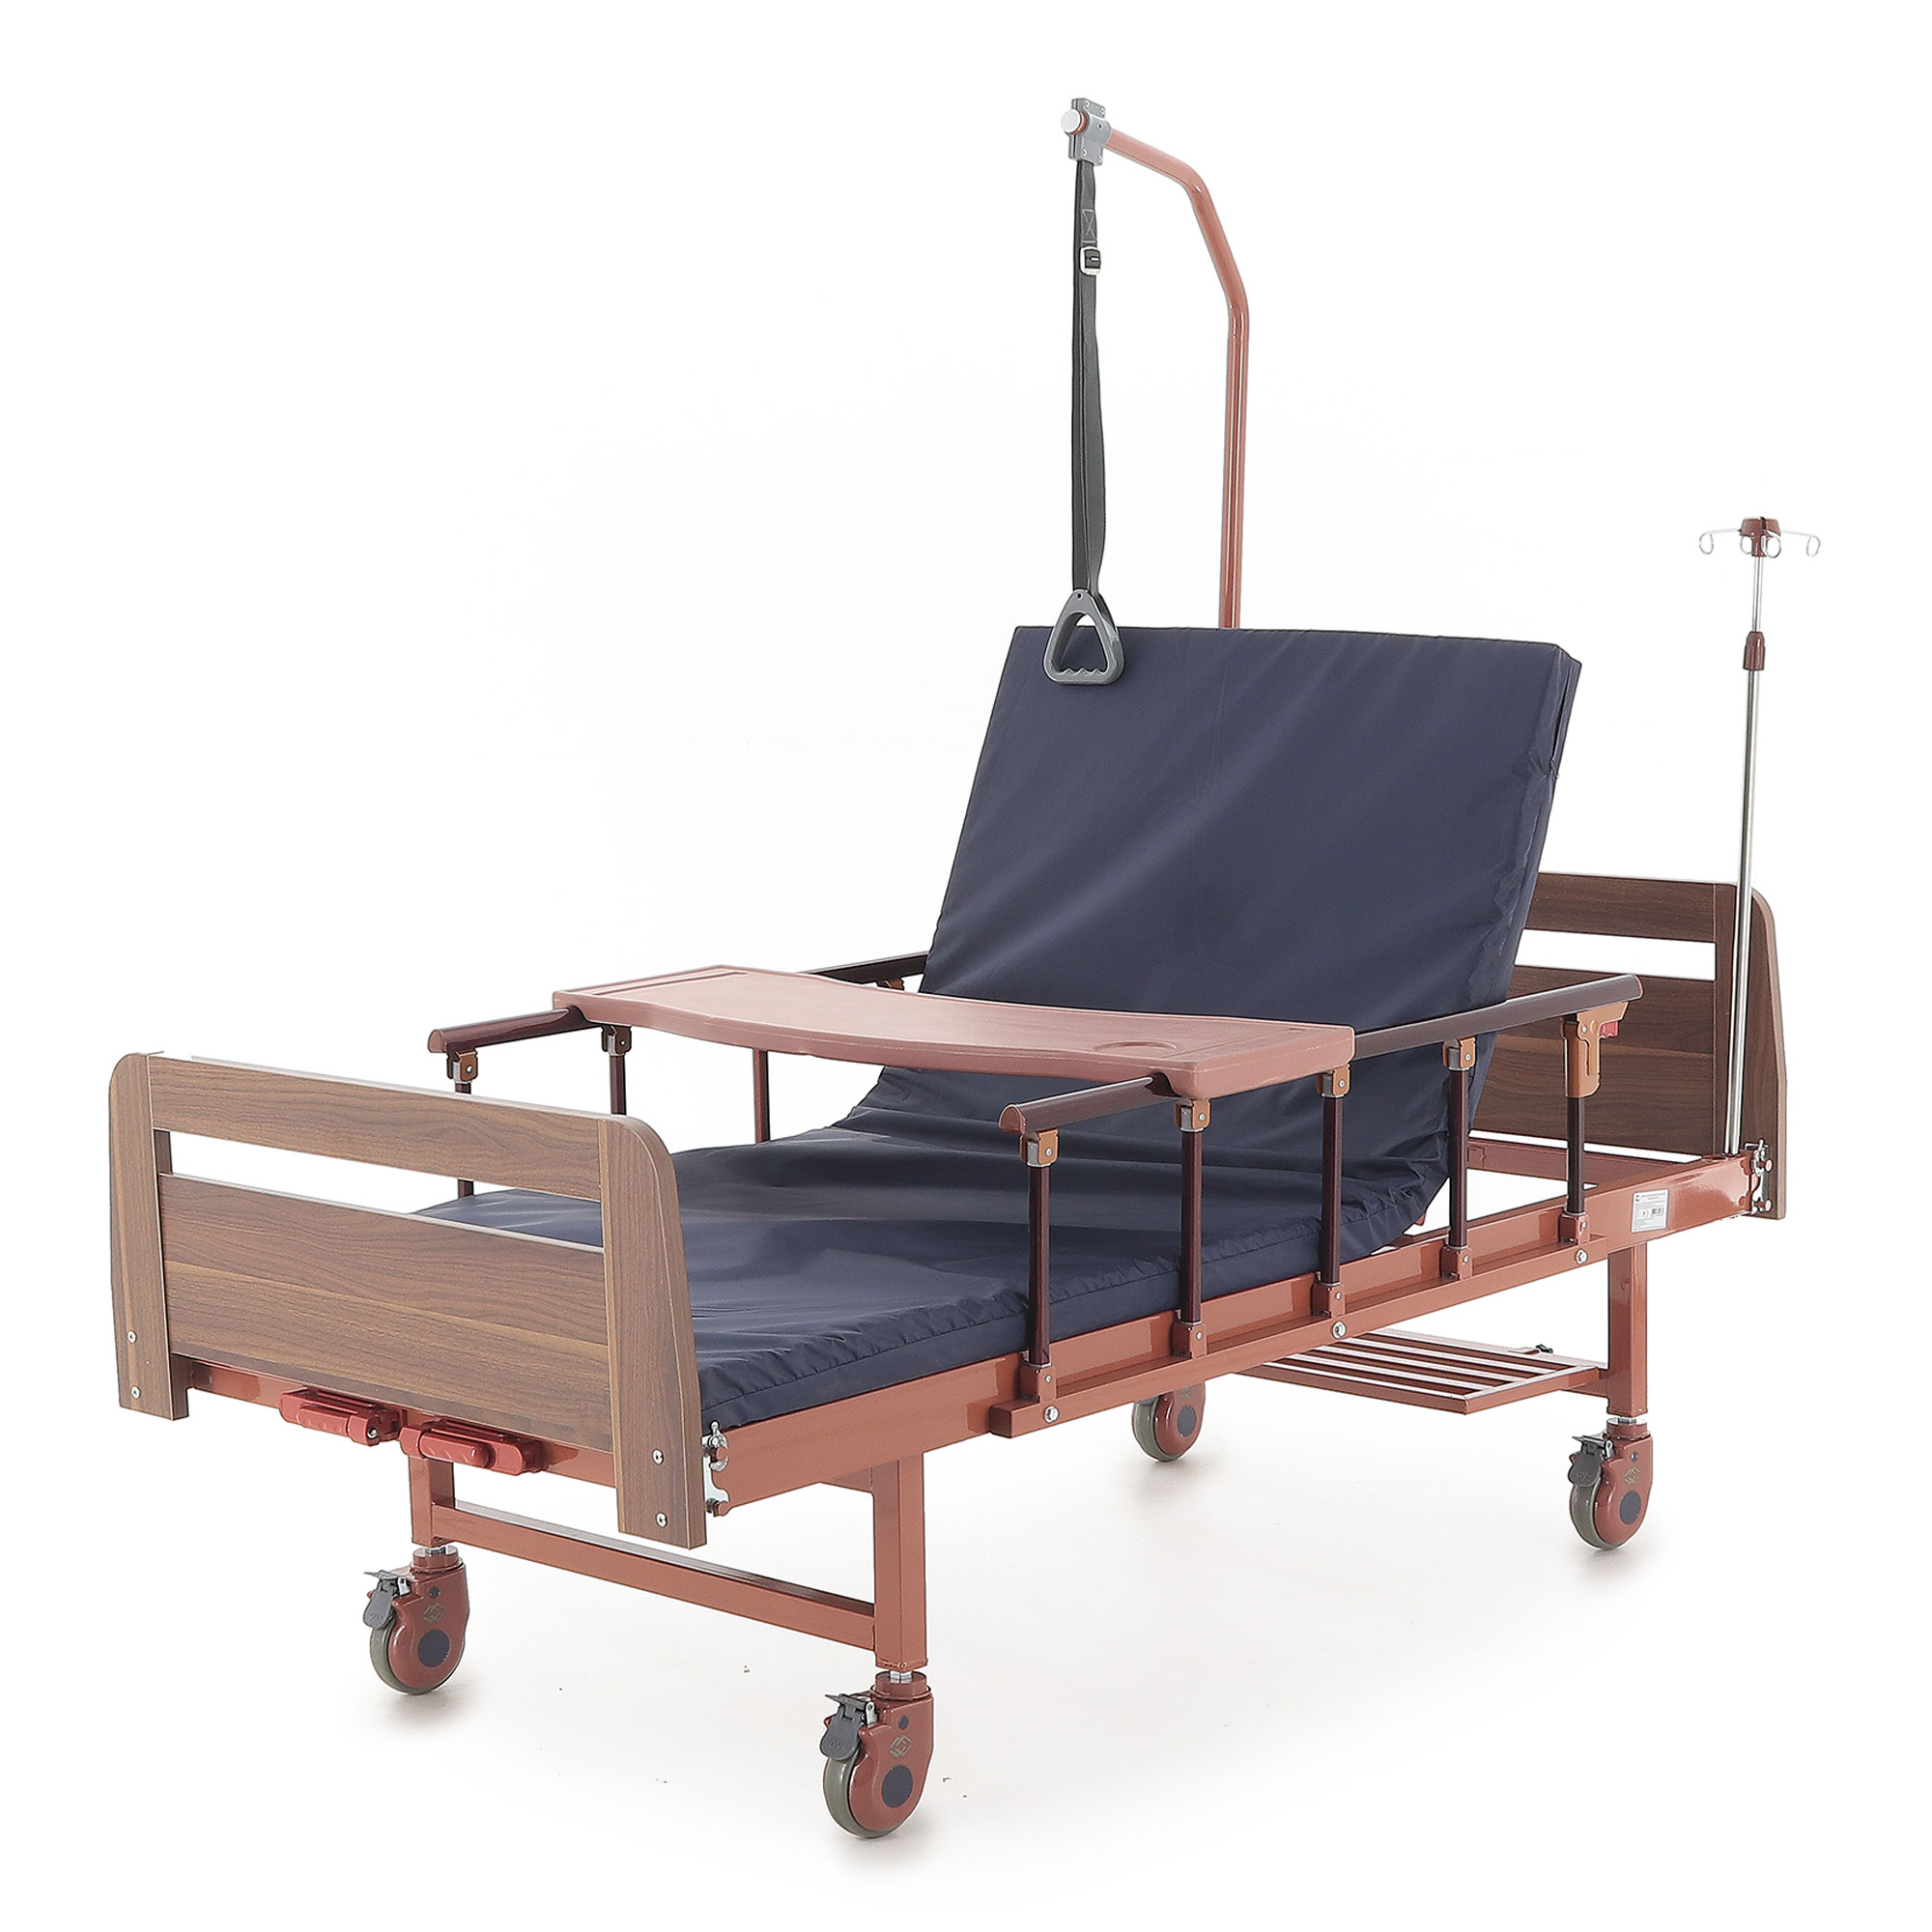 Аренда медицинских кроватей для лежачих